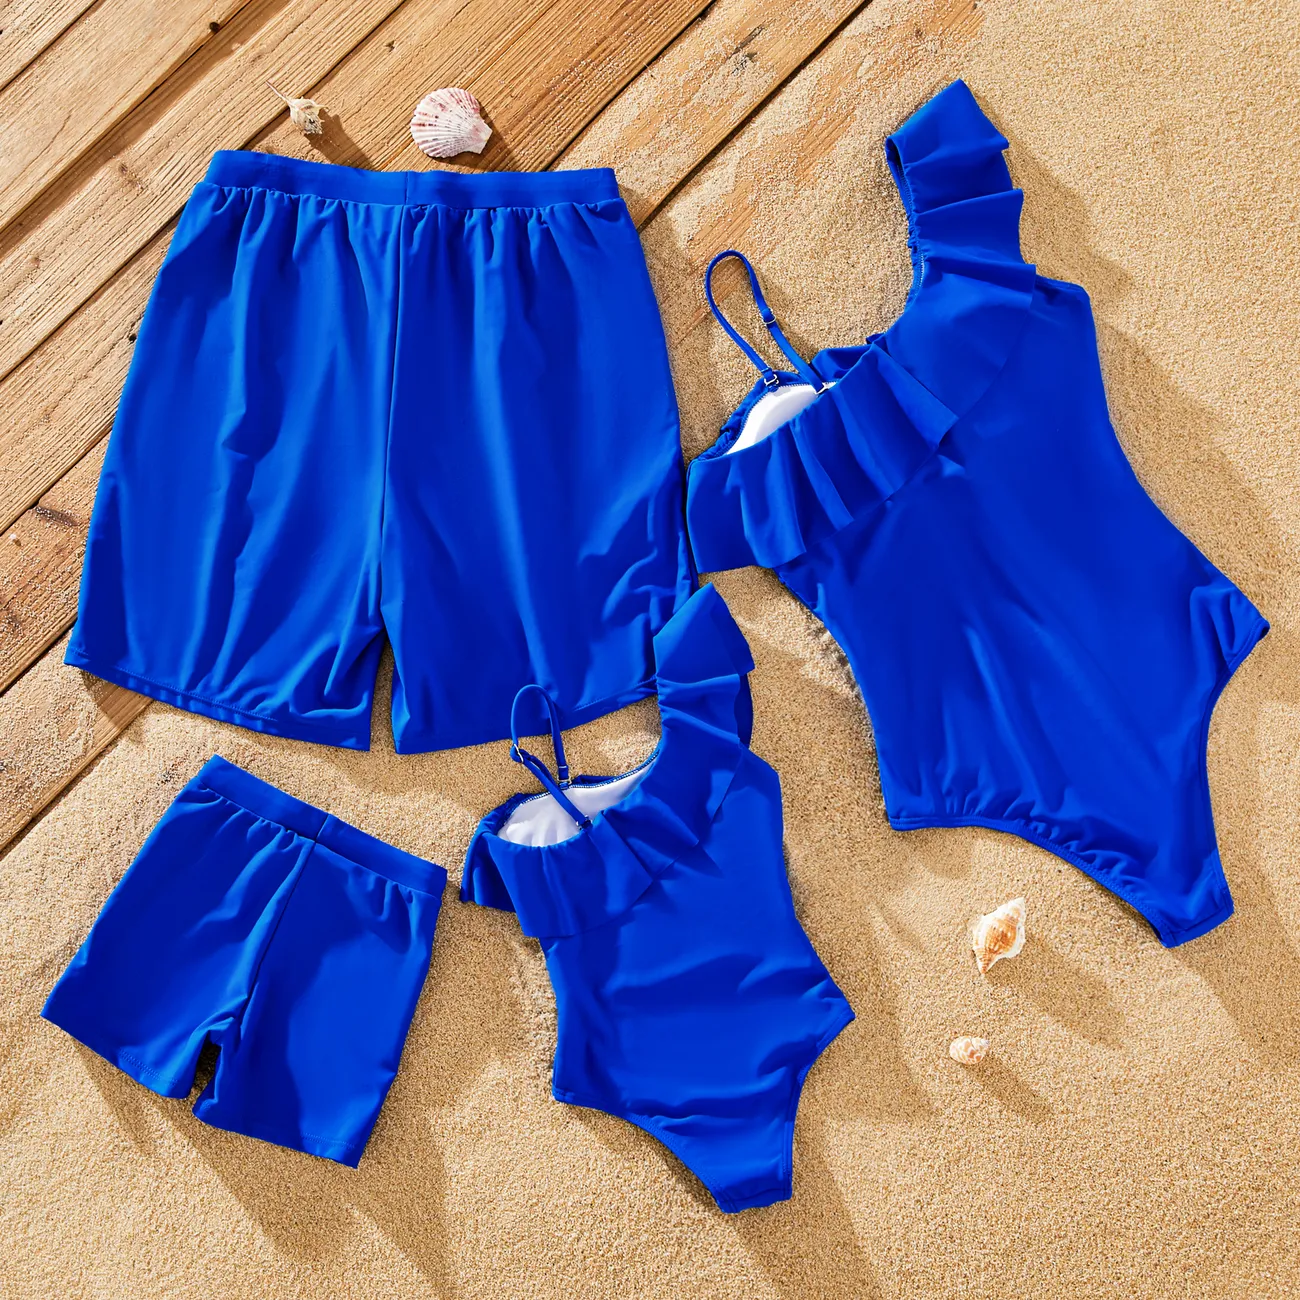 ملابس السباحة إطلالة العائلة للجنسين لون سادة أزرق big image 1